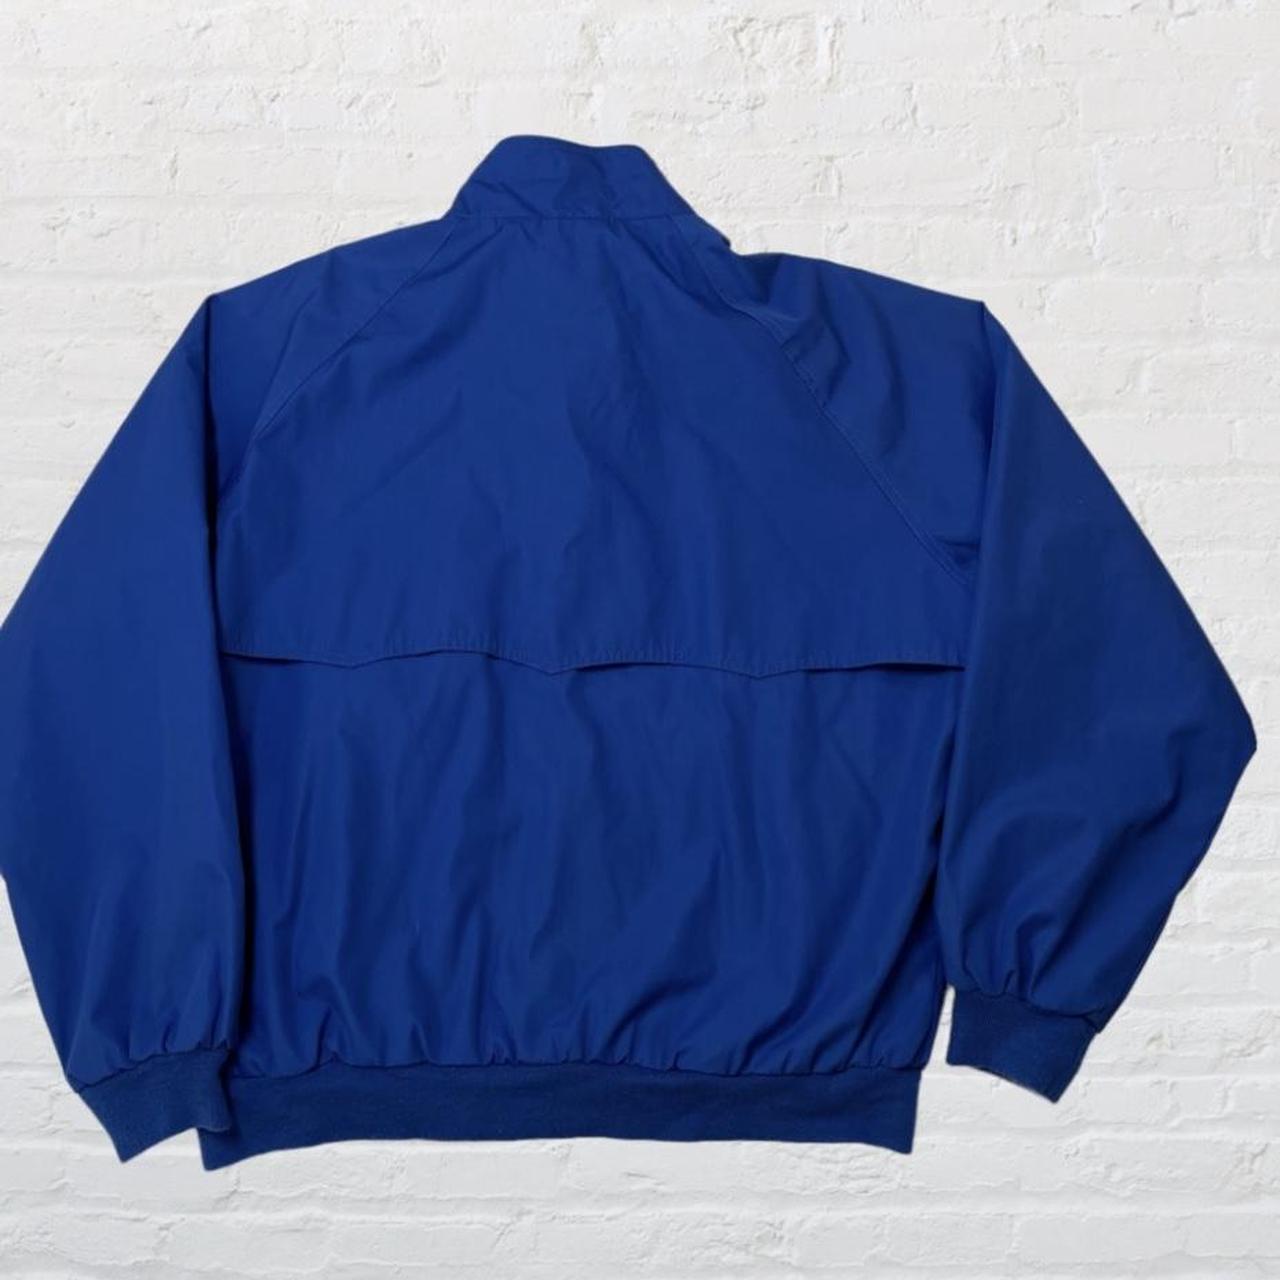 Sears Men's Blue Jacket (2)